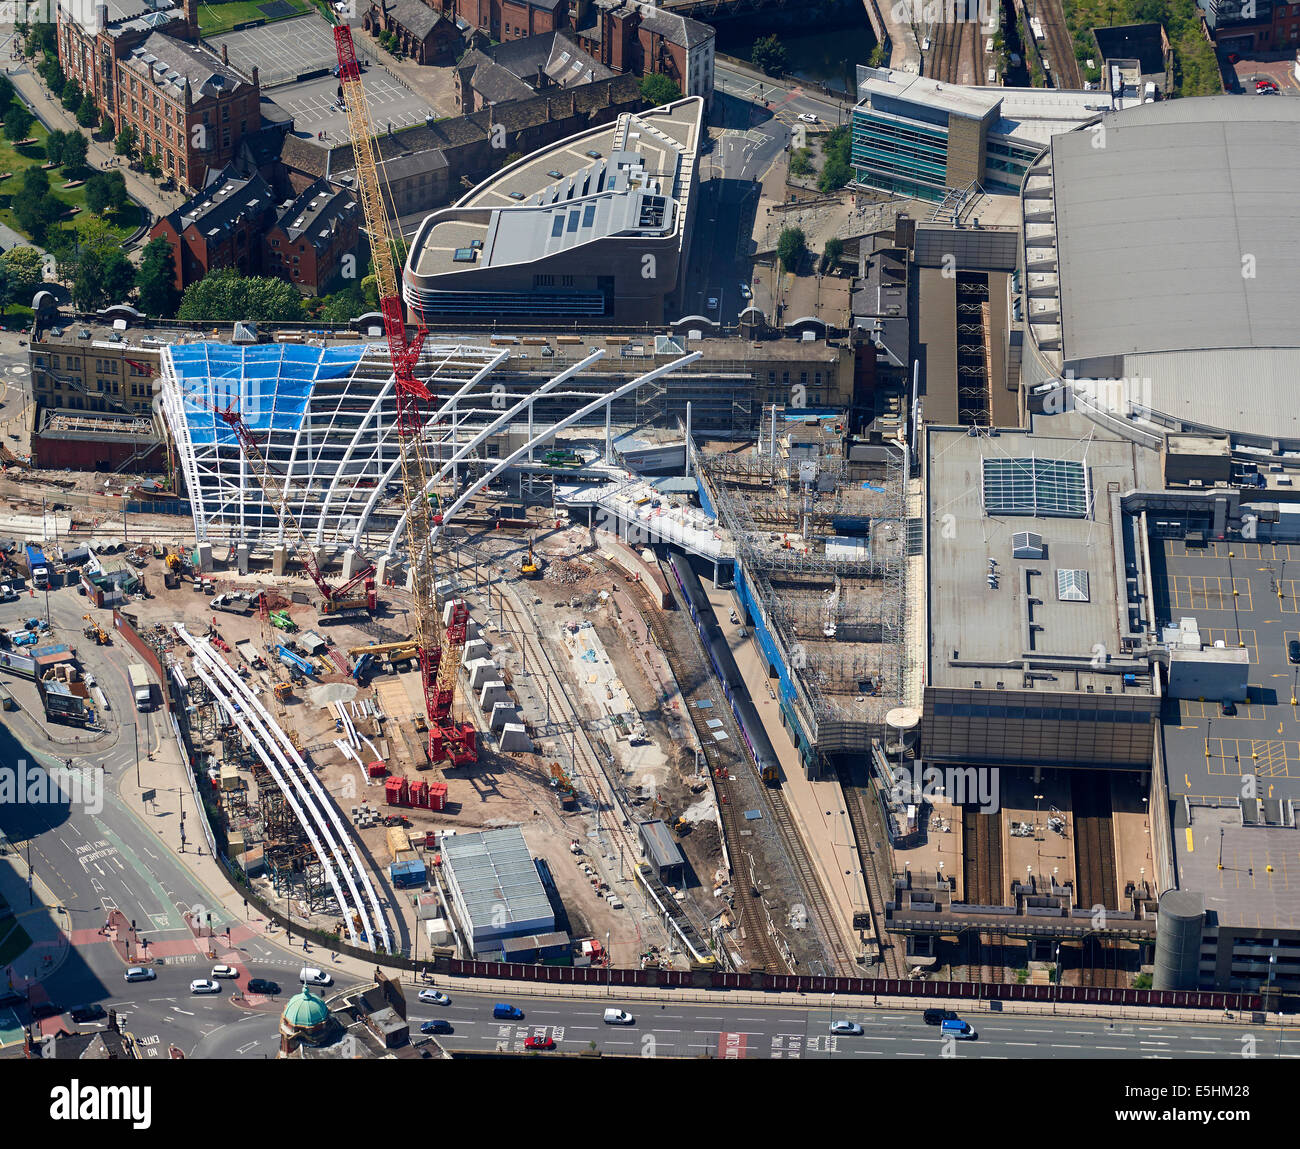 La stazione di Victoria dall'aria, il centro città di Manchester, nel nord ovest dell'Inghilterra, Regno Unito, che mostra il nuovo tetto in costruzione Foto Stock